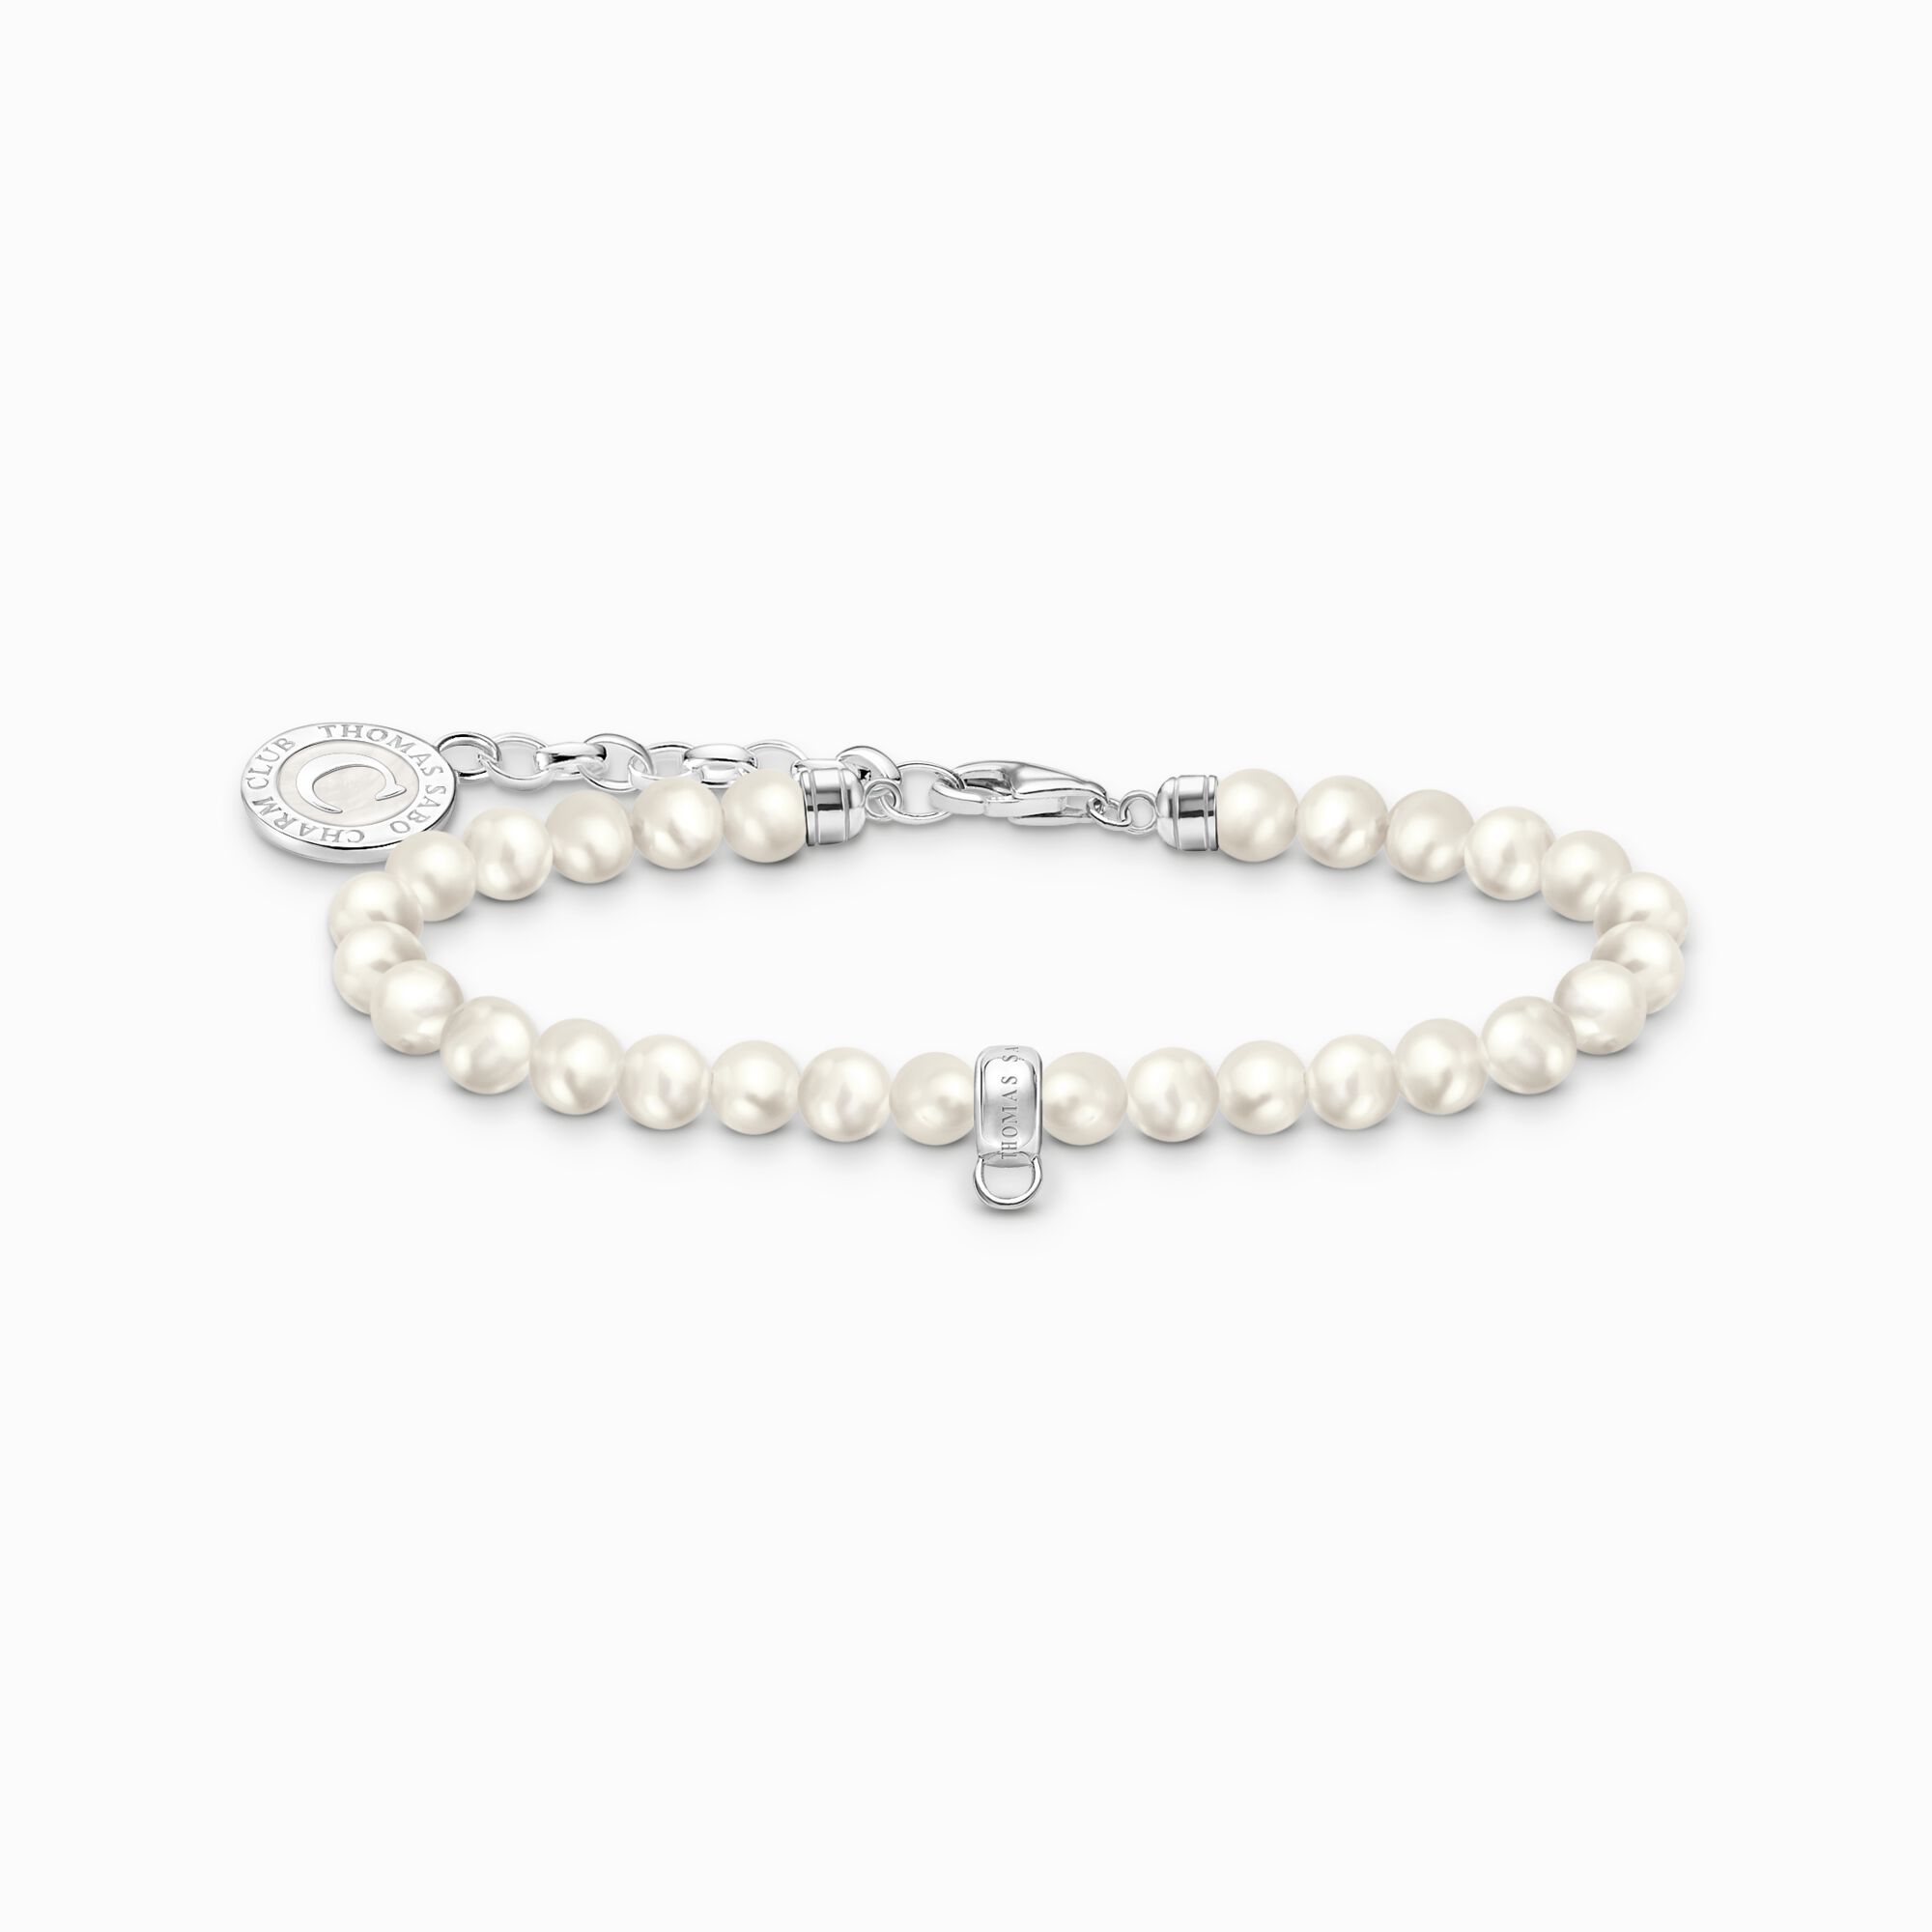 Pulsera Miembro Charm de plata con perlas blancas de la colección Charm Club en la tienda online de THOMAS SABO